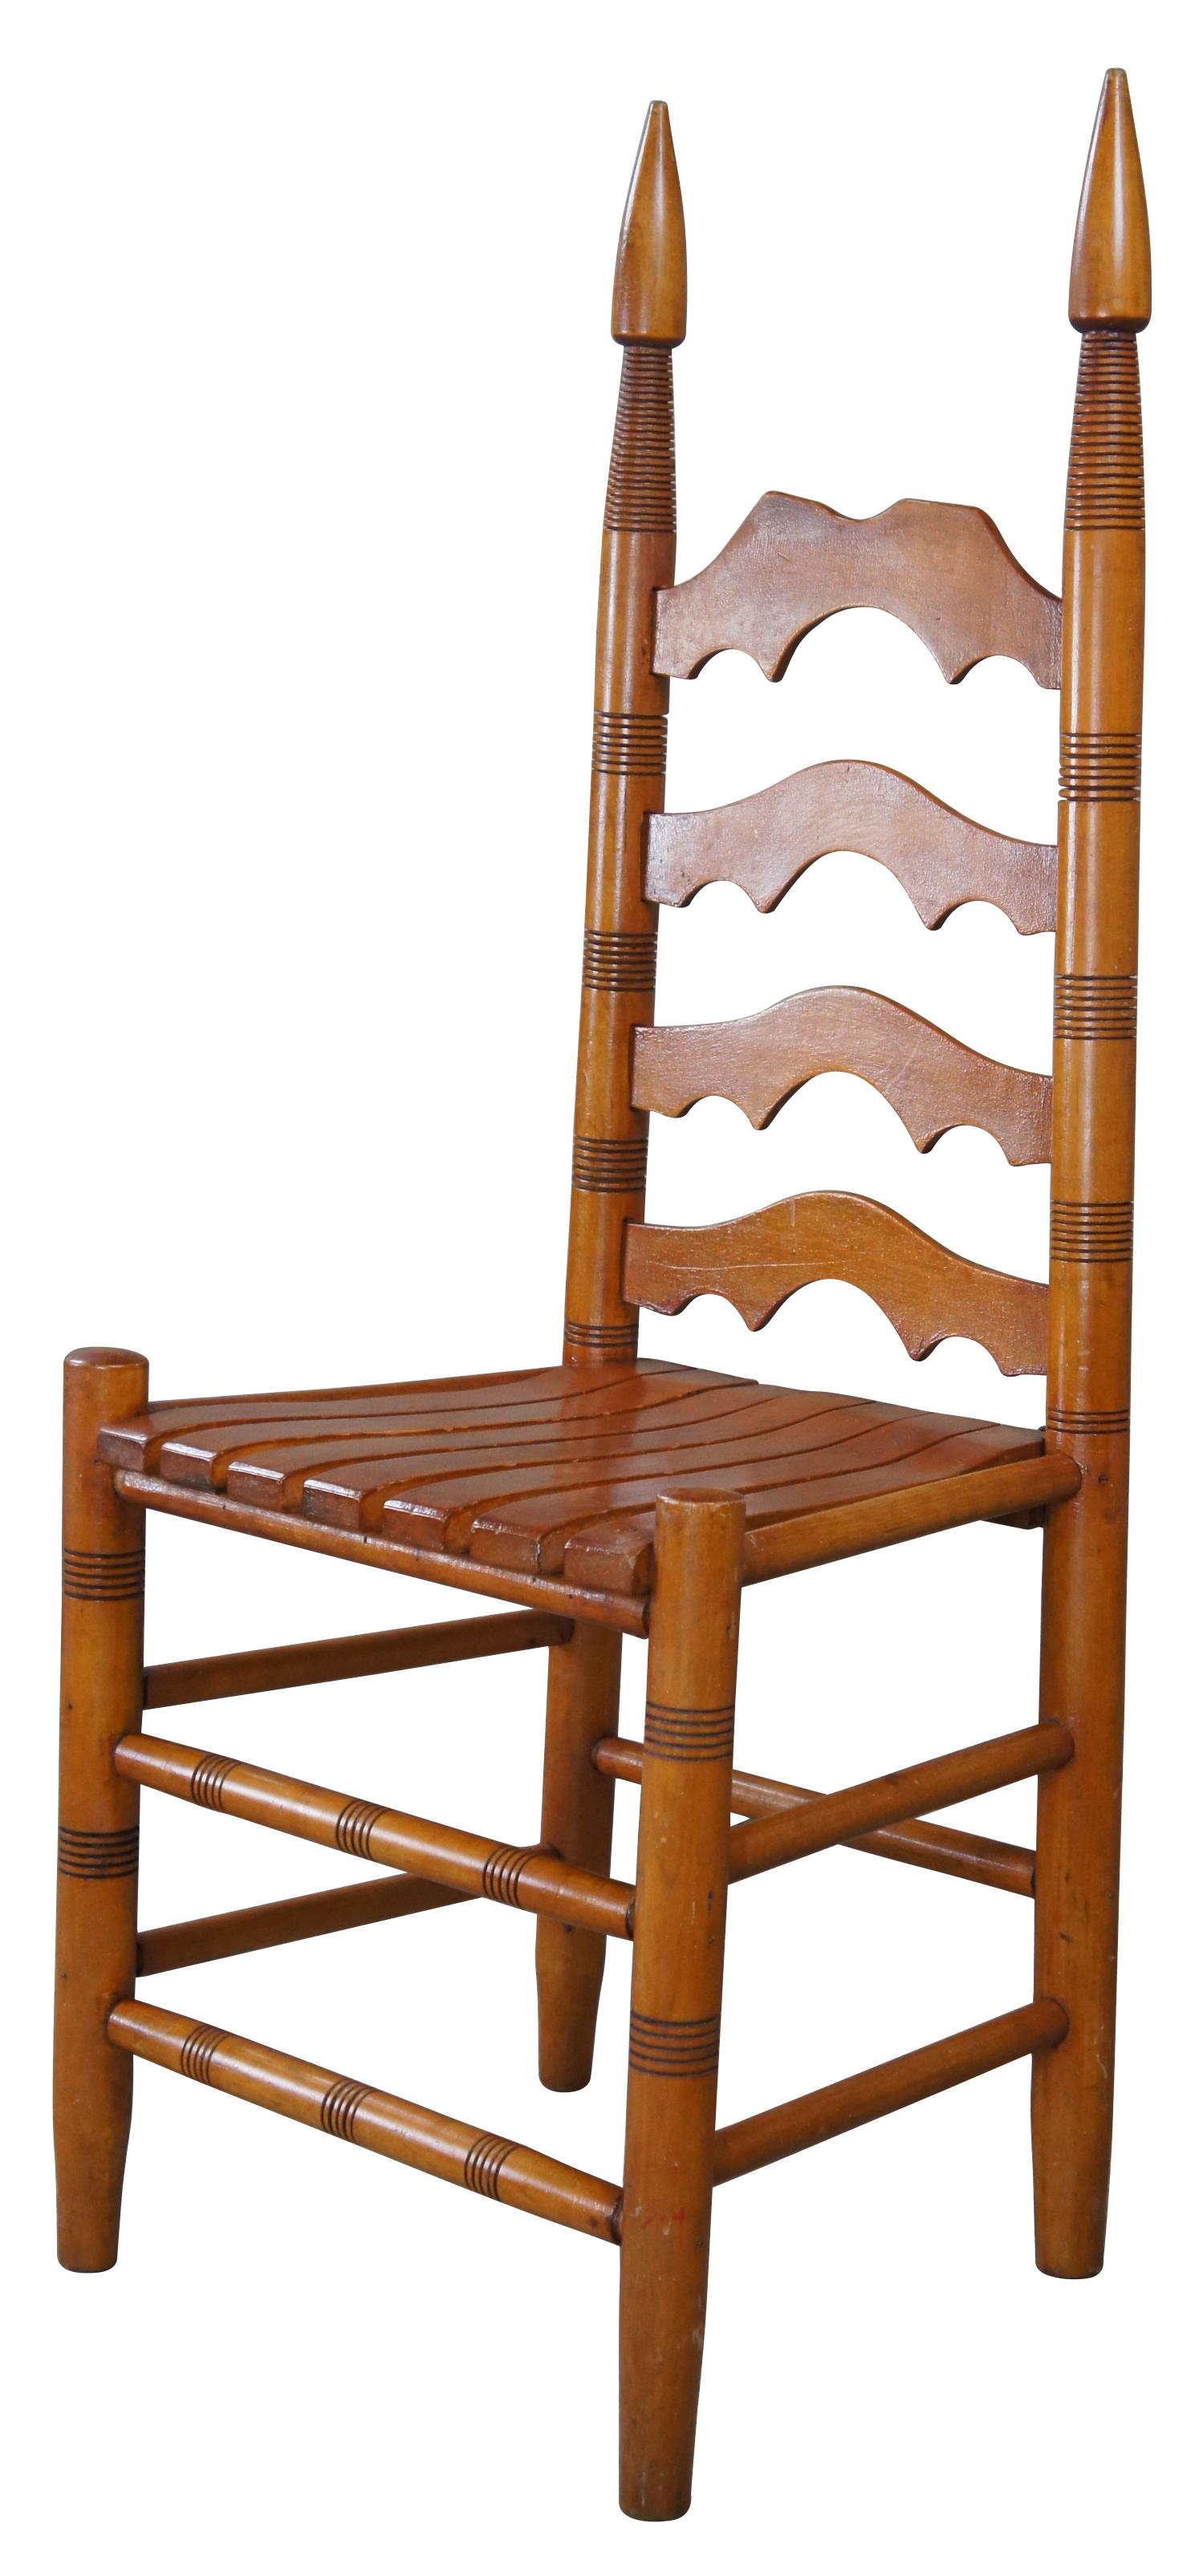 Chaise d'appoint artisanale du 20e siècle. Fabriqué en chêne avec un dossier en échelle serpentine. Il est doté de montants déchirés, de fleurons en forme de flèche et d'un siège à lattes. Les pieds sont tournés avec des traverses nervurées.